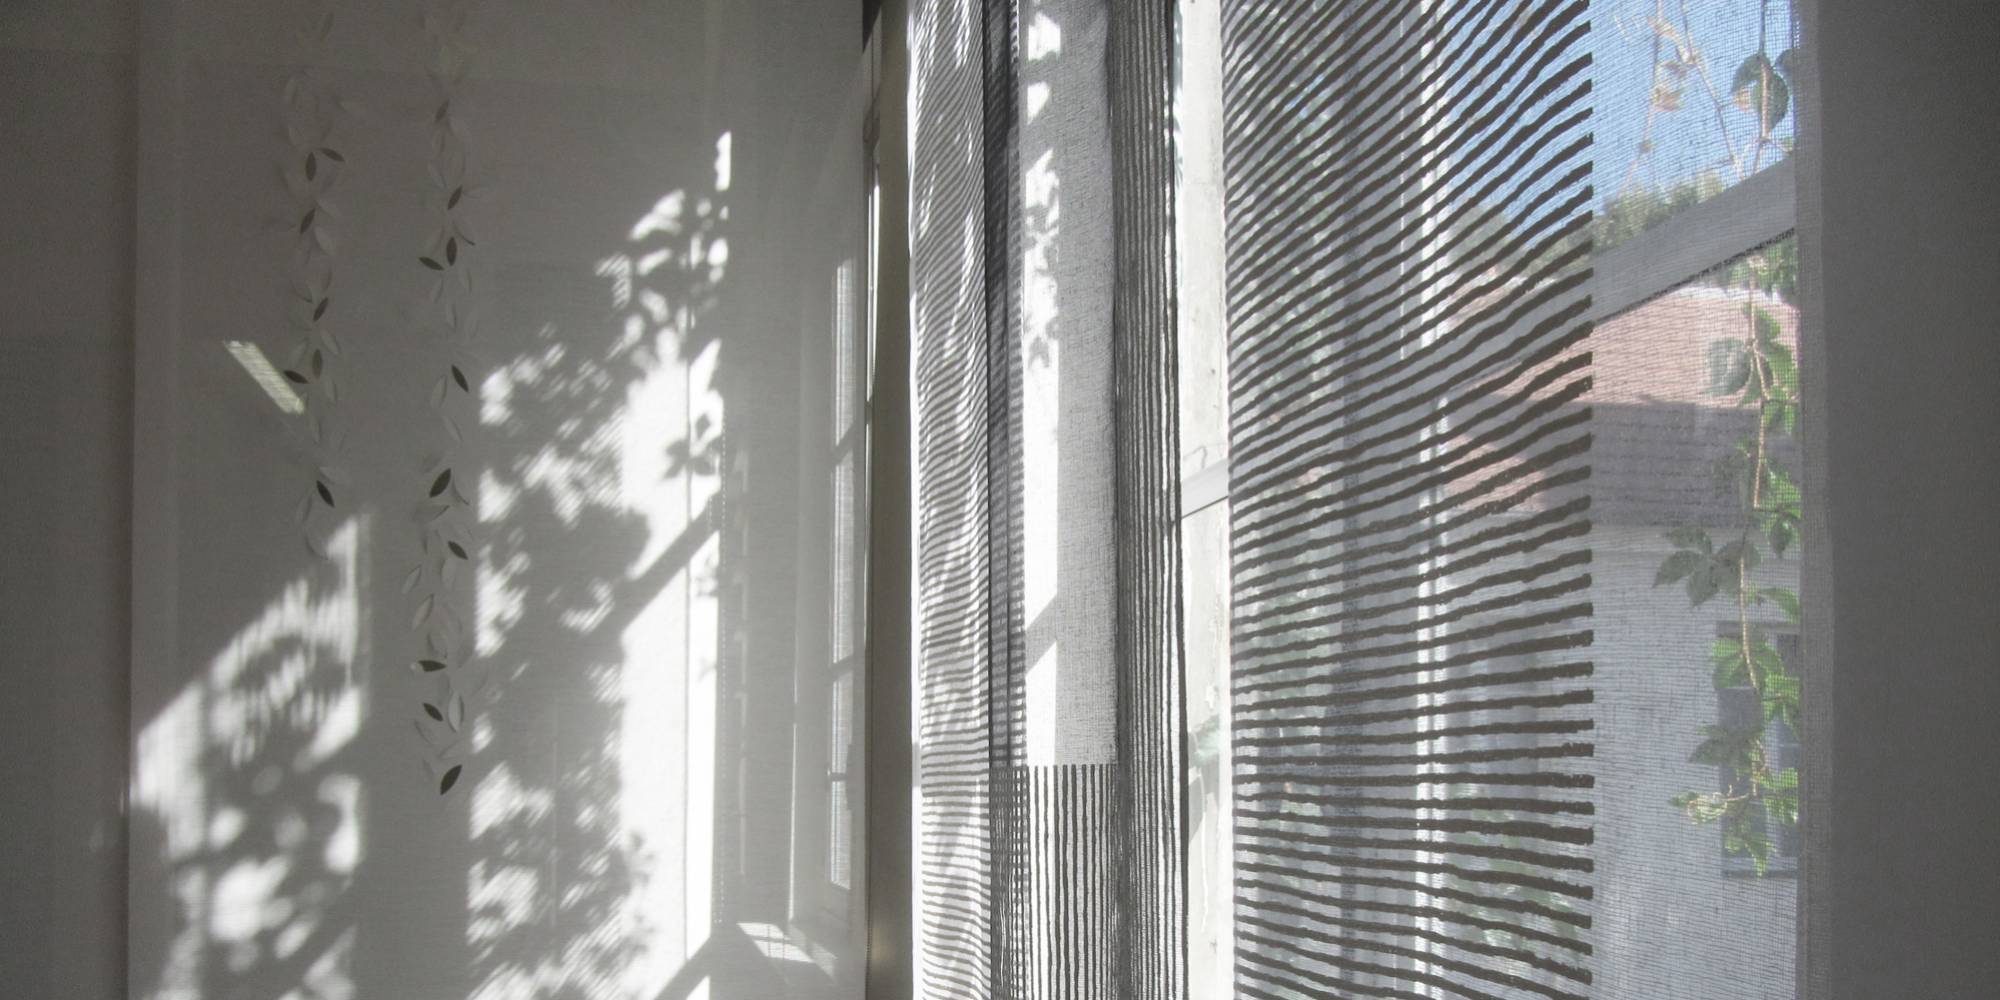 Dessins "sieste" et "guirlande de feuilles" : habillage de fenêtre & séparation espaces 